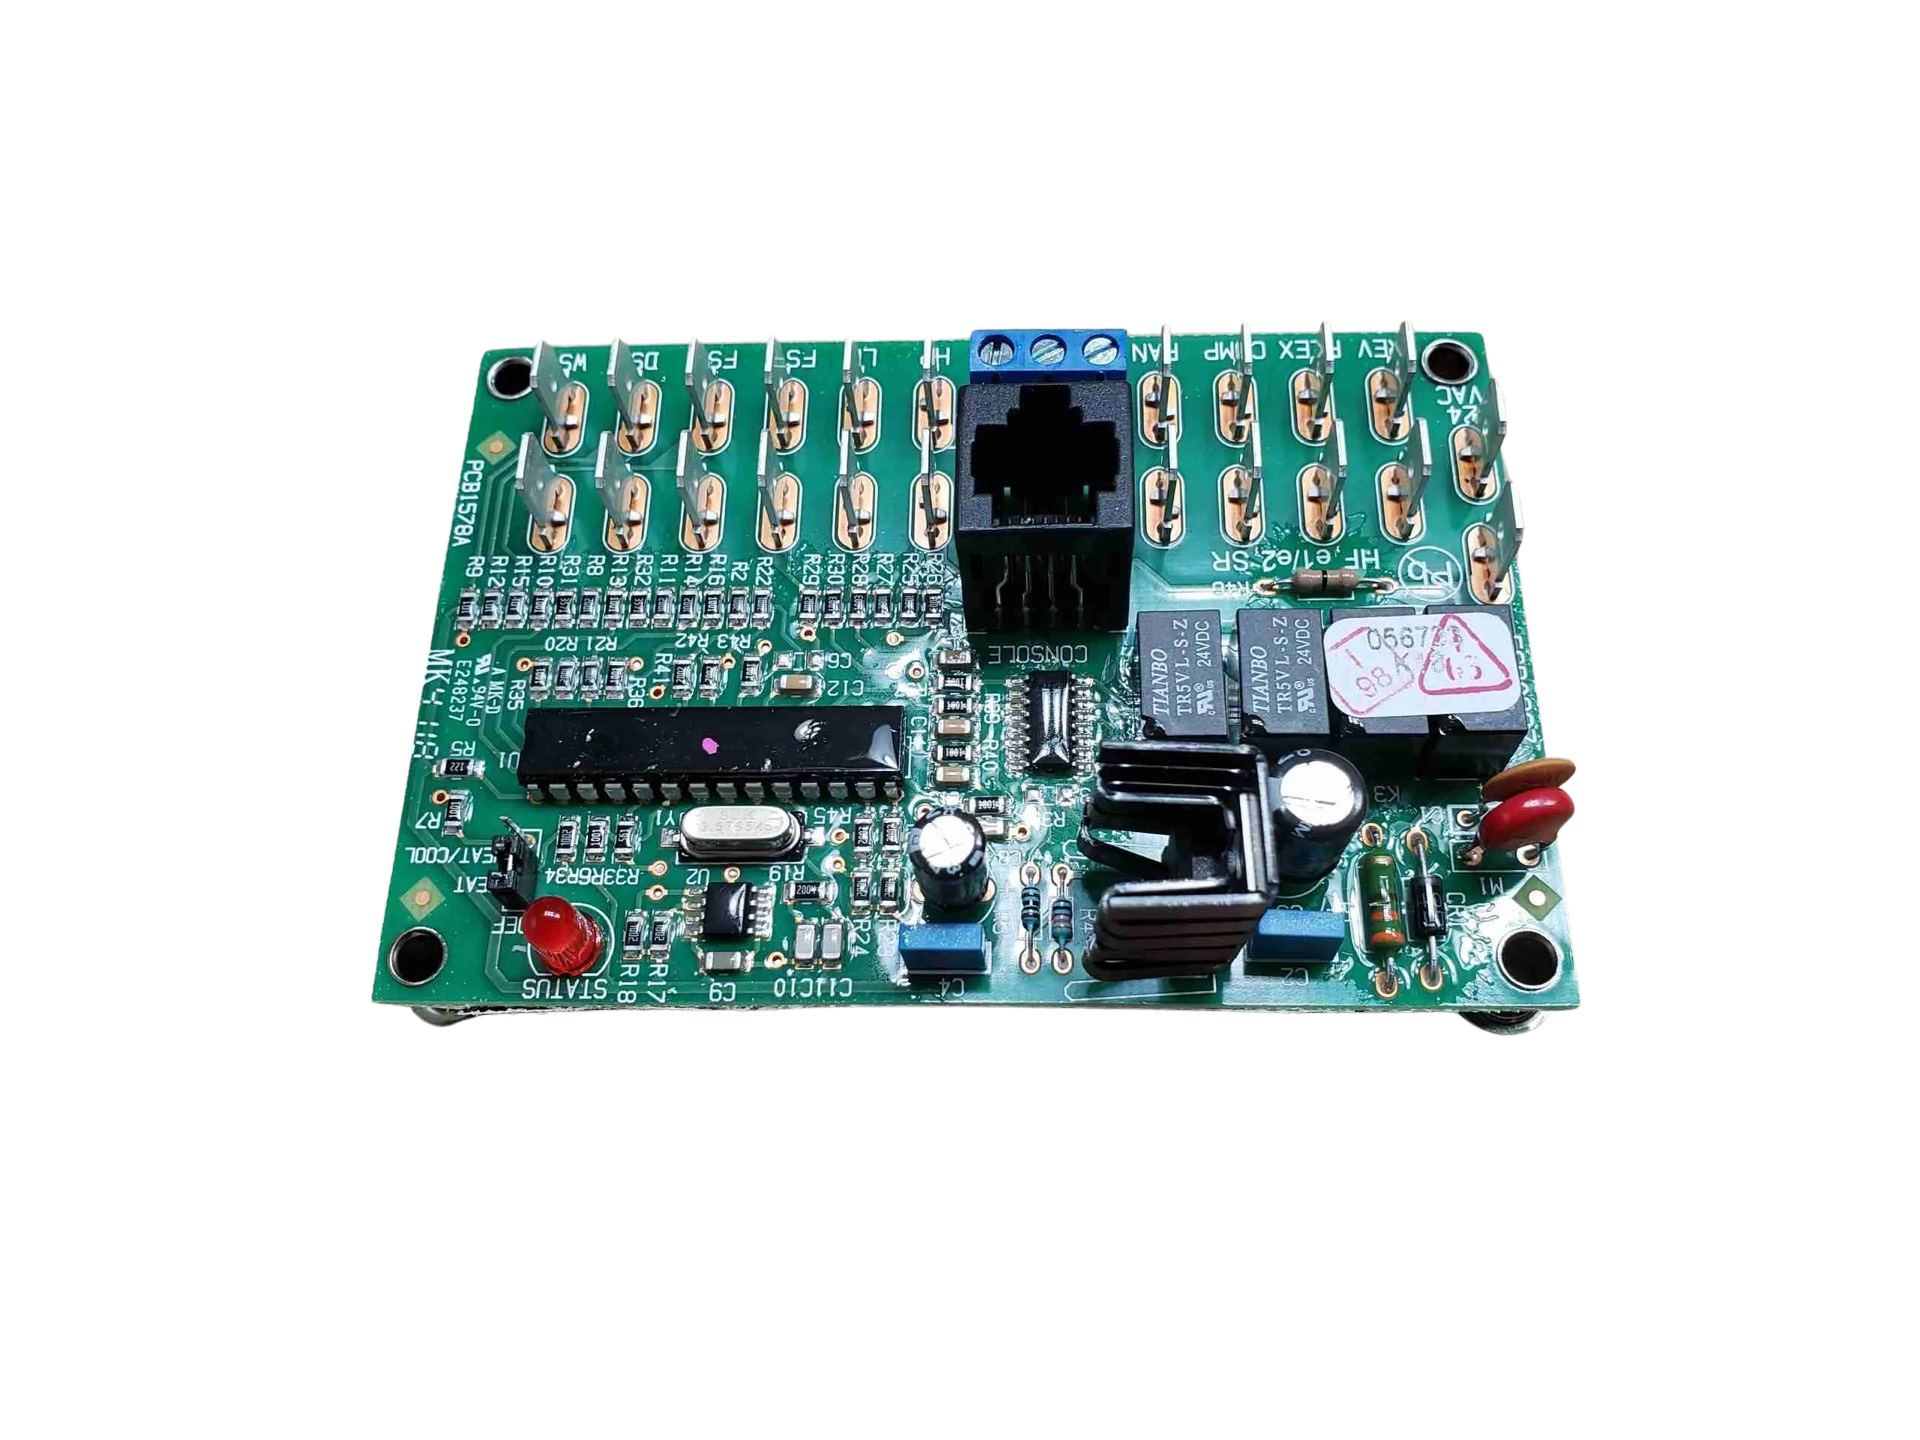 AquaCal HP9 Control Board - ECS0229